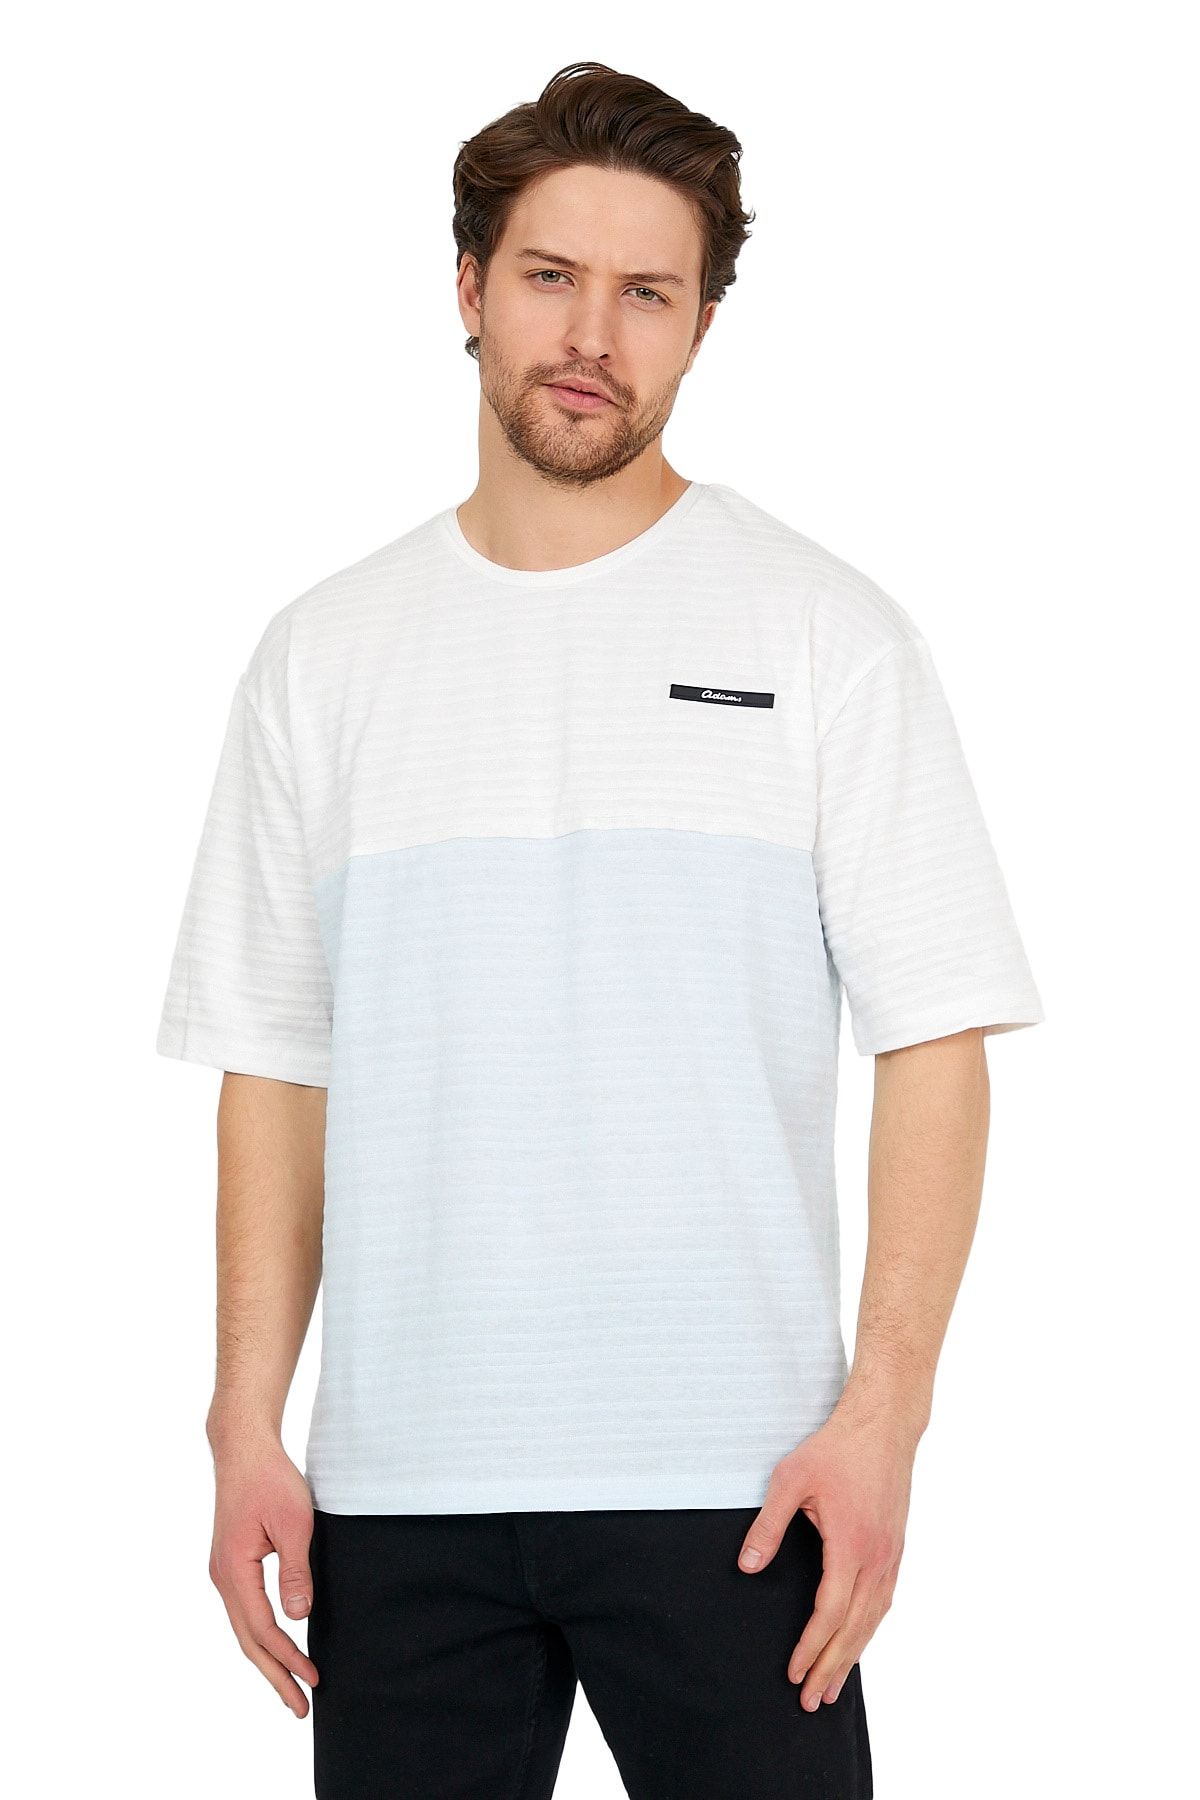 Adams Oversize Beyaz/mavi Erkek Jakarlı Bisiklet Yaka Kısa Kollu T-shirt